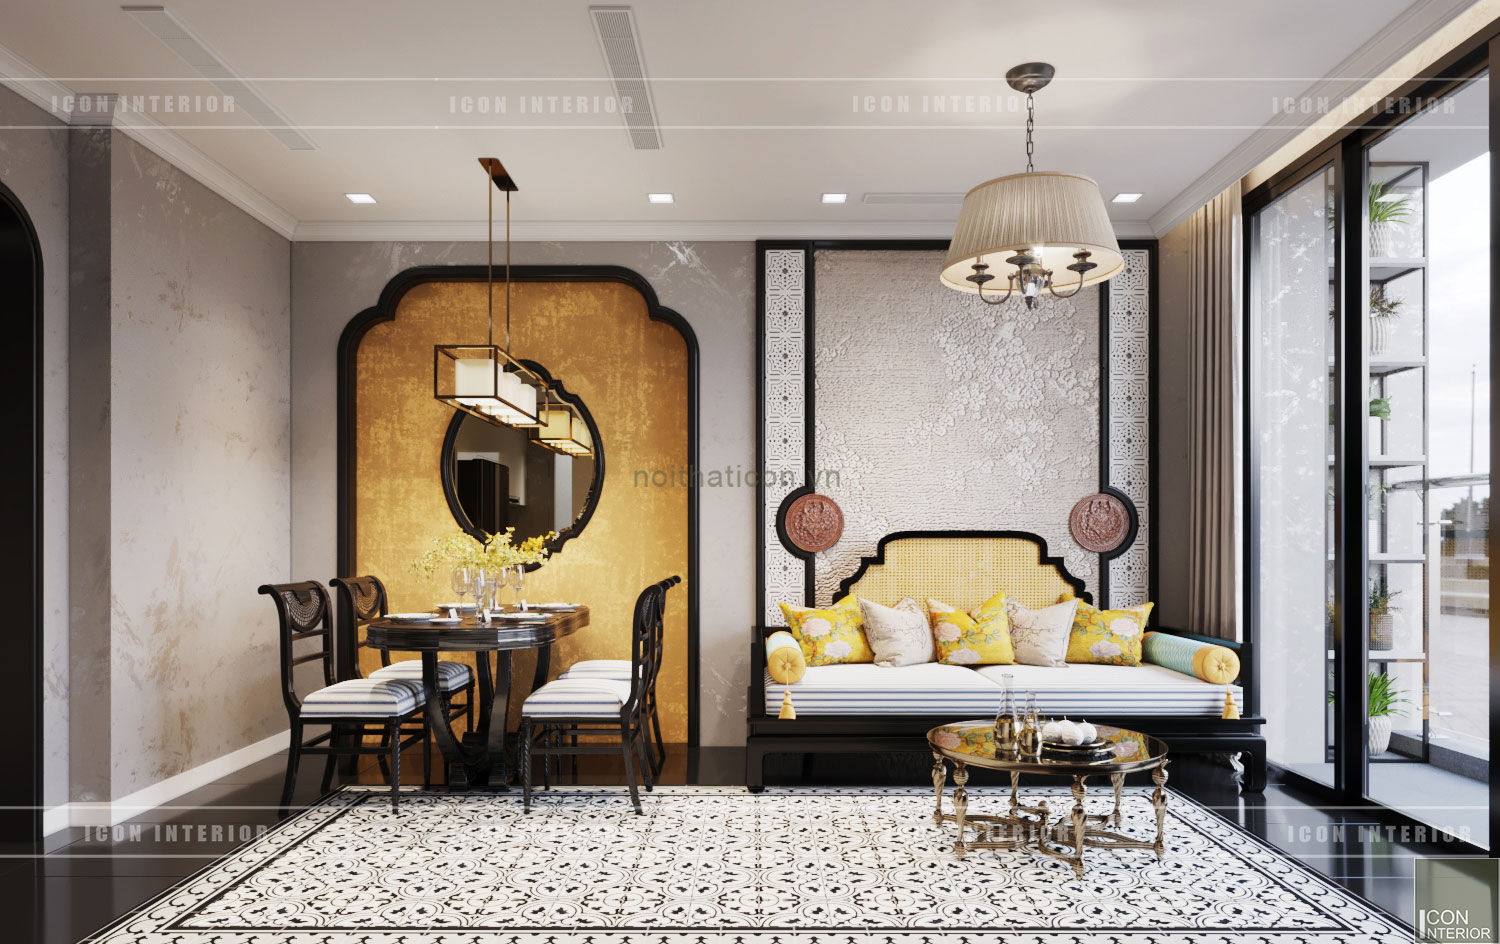 XU HƯỚNG ĐÔNG DƯƠNG ẤN TƯỢNG - Thiết kế căn hộ Vinhomes Golden River, ICON INTERIOR ICON INTERIOR Azjatycki salon